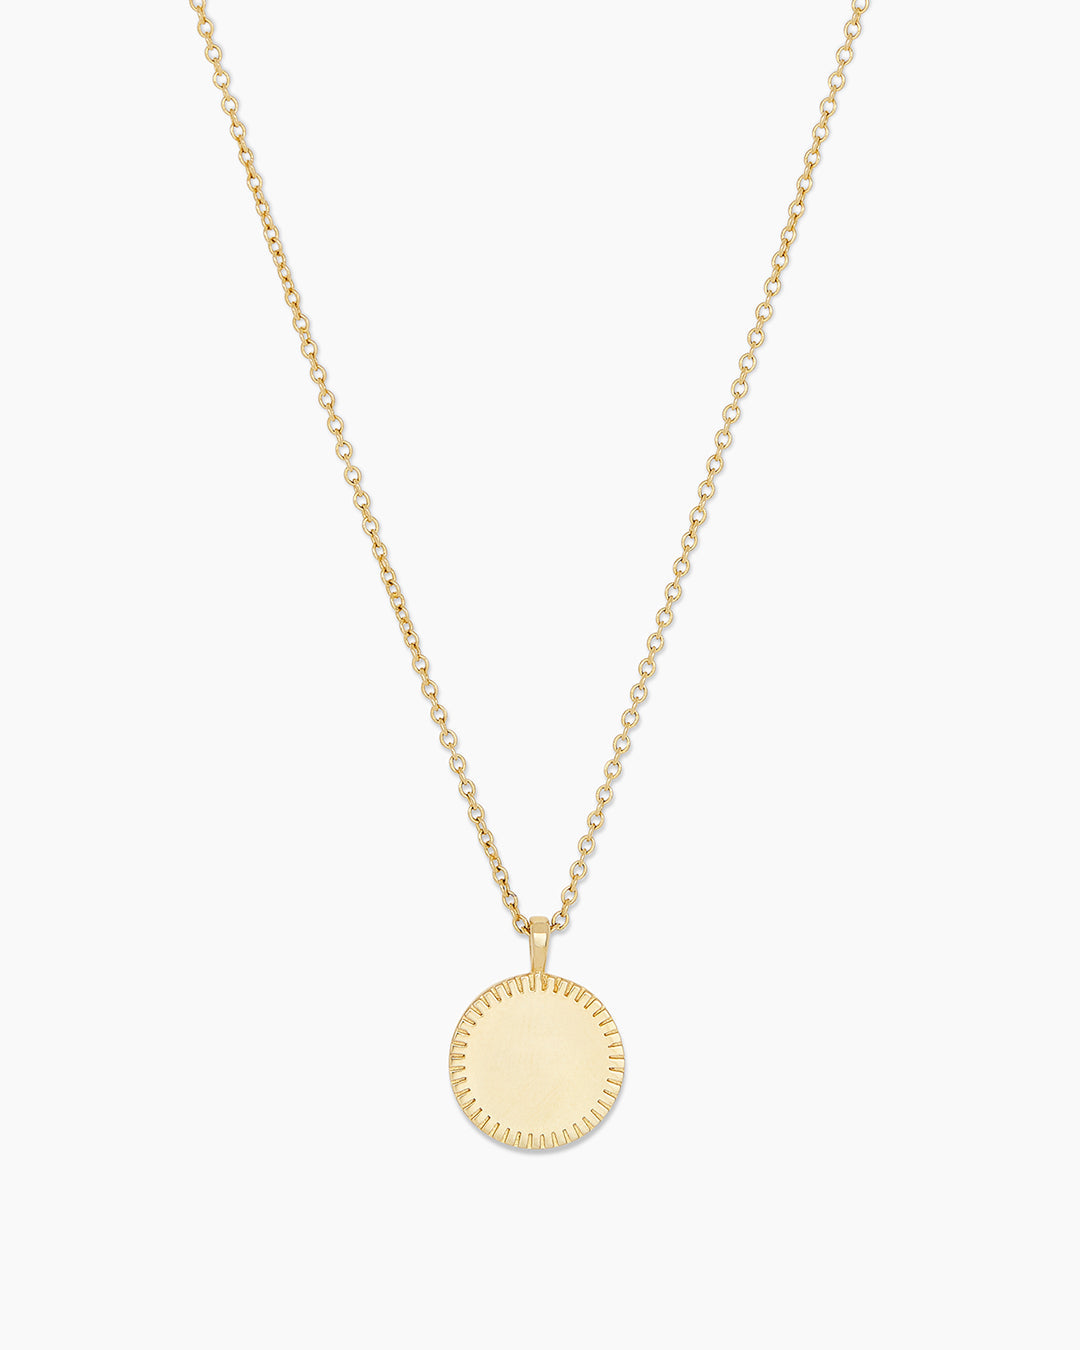 Bespoke Locket Necklace in Gold Plated, Women's by Gorjana